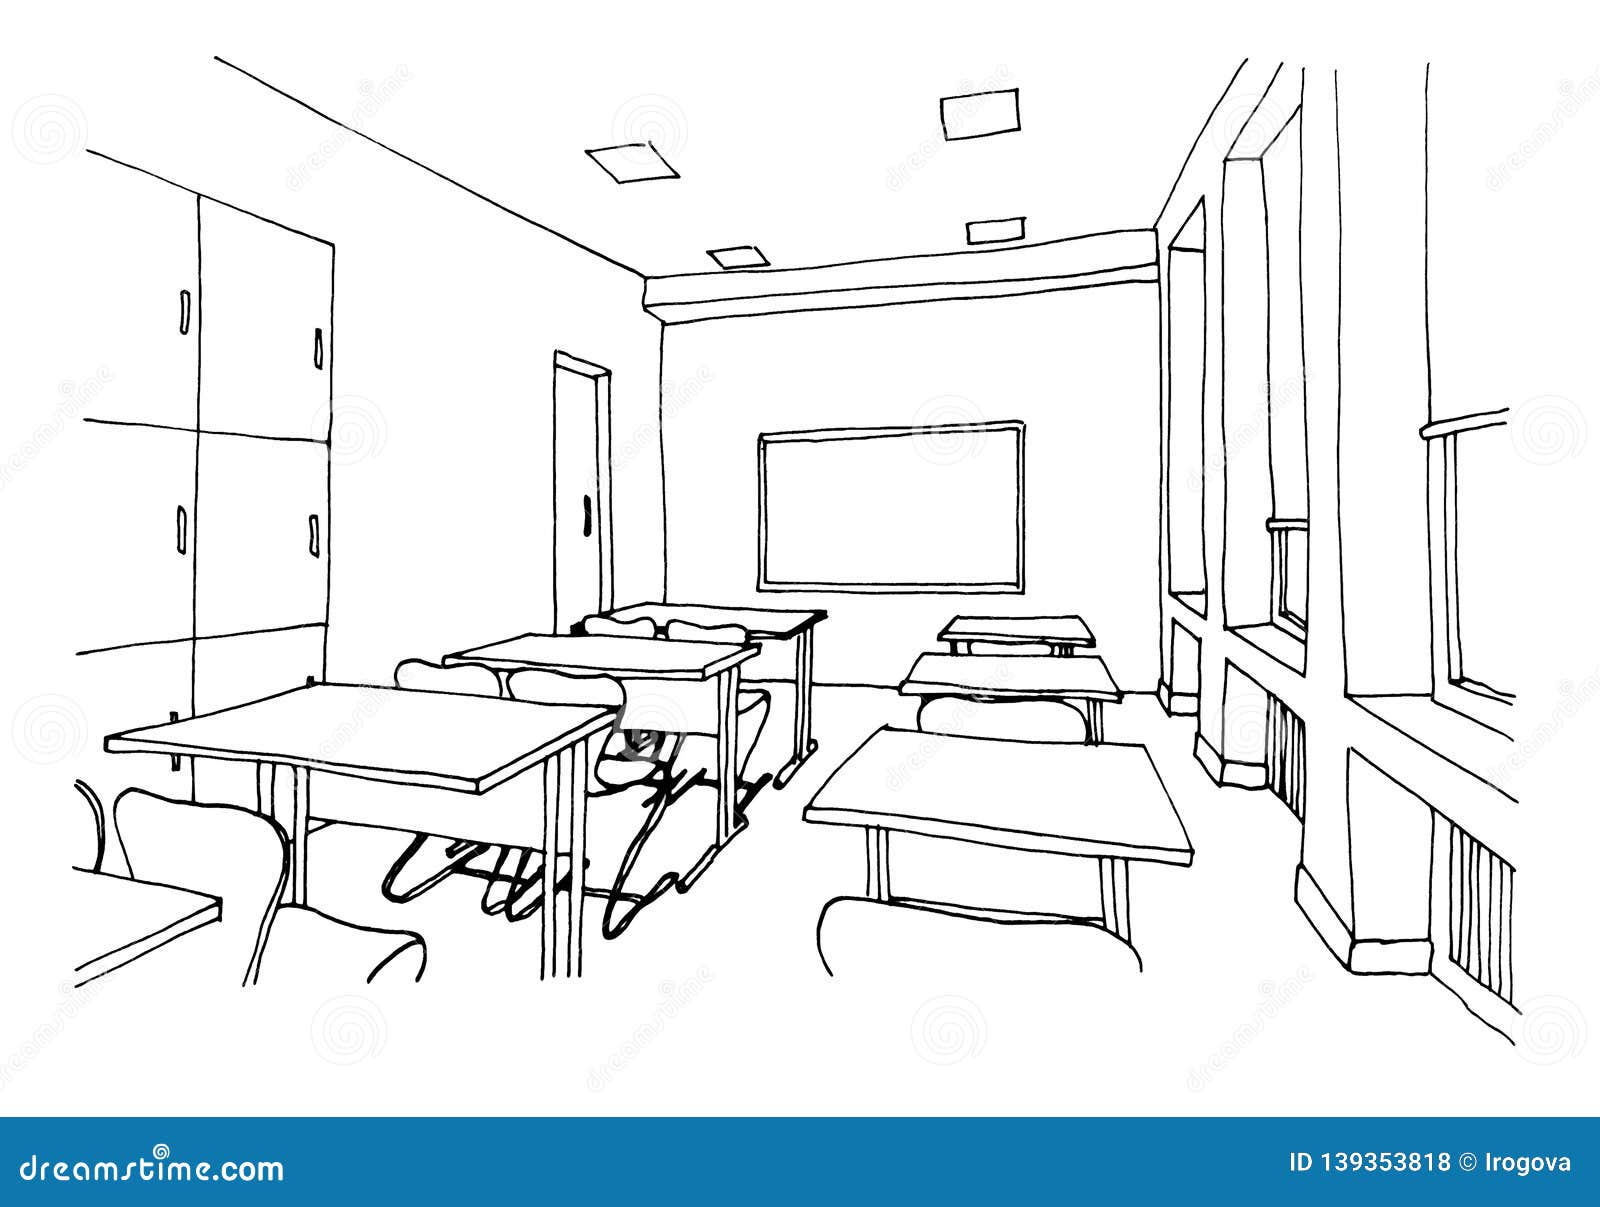 How to Draw a Classroom - HelloArtsy